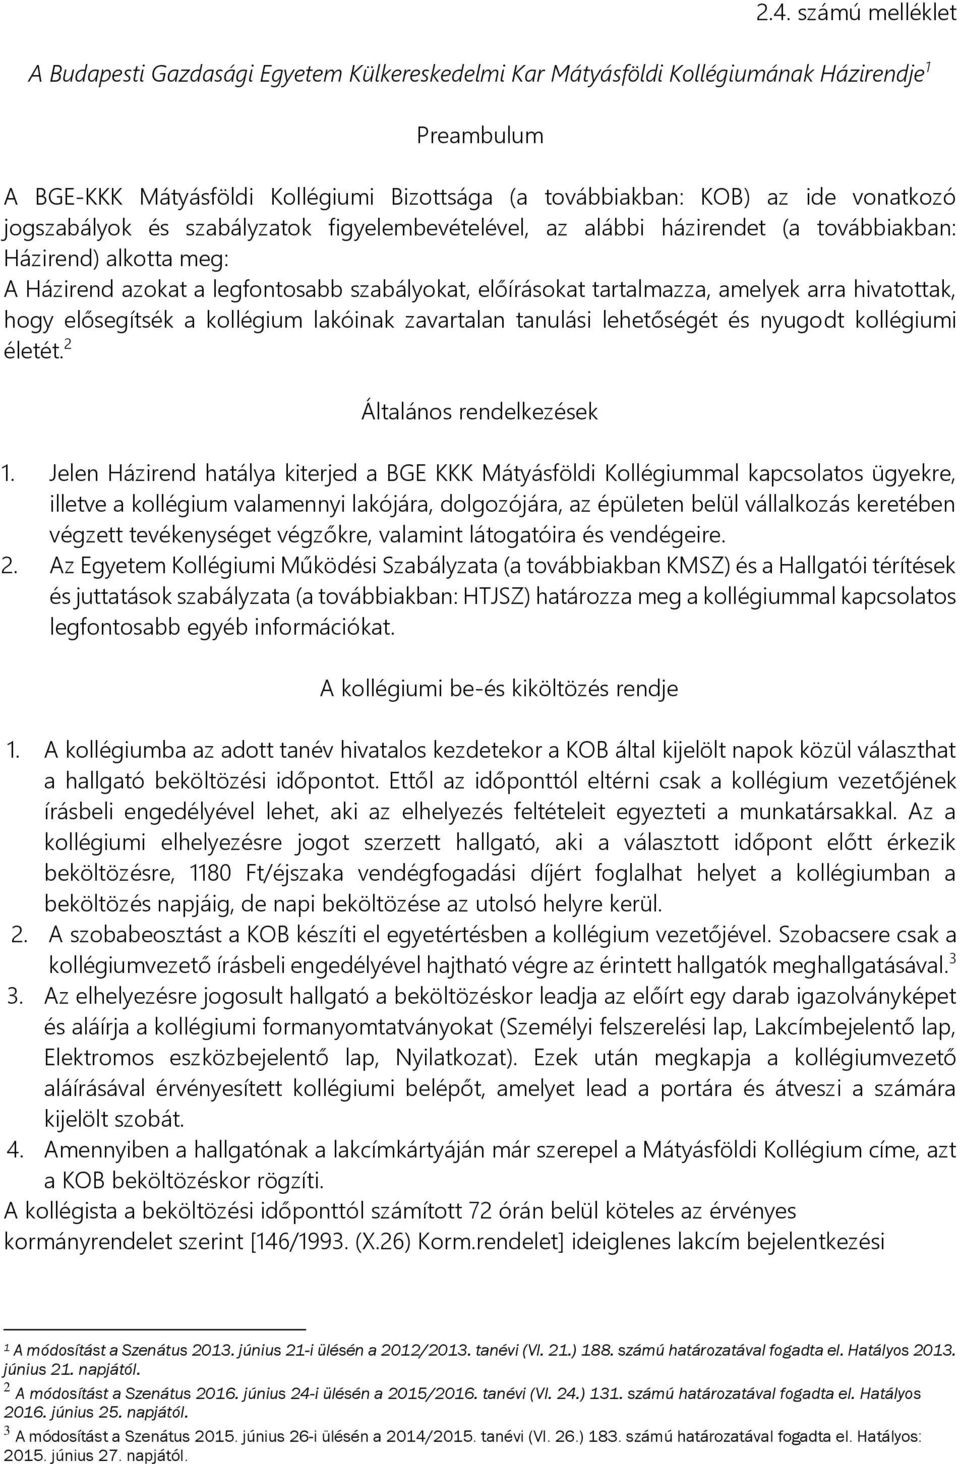 A Budapesti Gazdasági Egyetem Külkereskedelmi Kar Mátyásföldi Kollégiumának  Házirendje 1. Preambulum - PDF Free Download